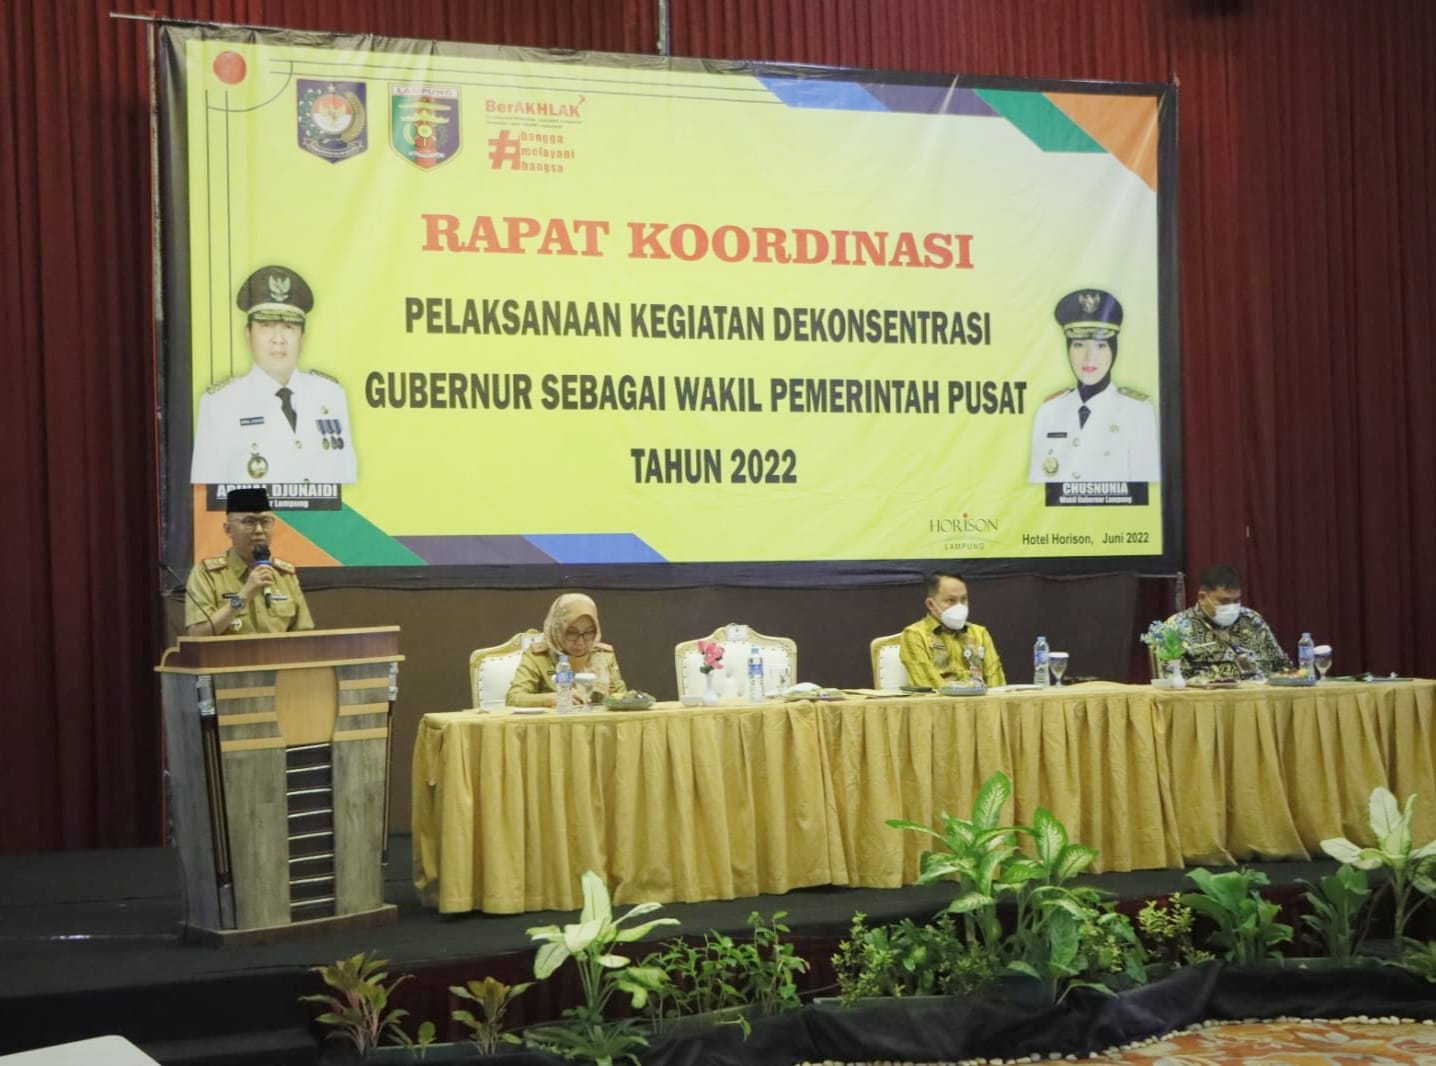 Pemprov Lampung Gelar Rakor Pelaksanaan Kegiatan Dekonsentrasi Gubernur sebagai Wakil Pemerintah Pusat Tahun 2